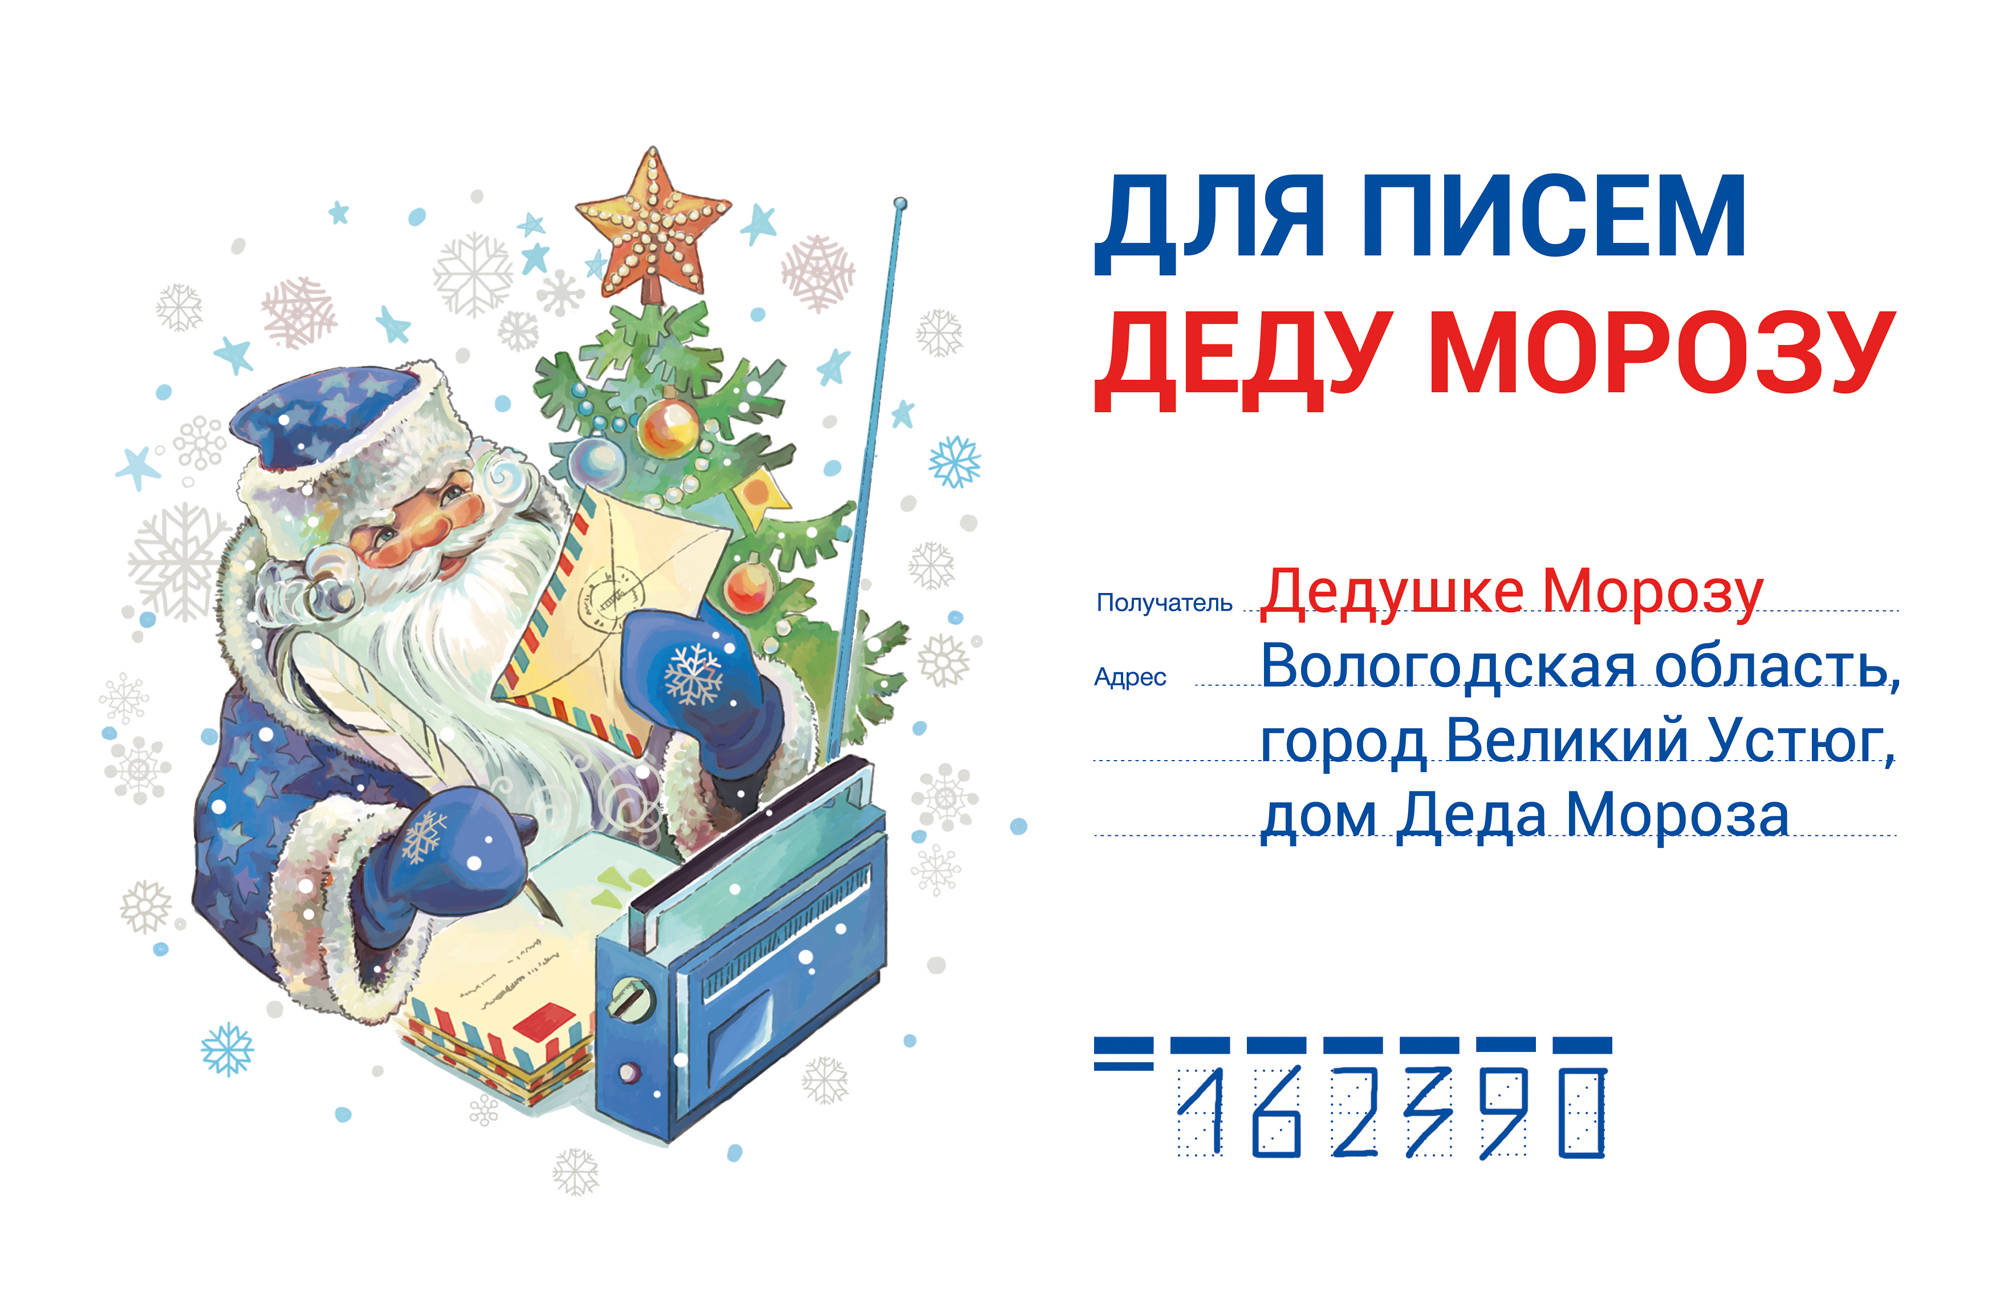 В Брянском почтамте установят праздничный ящик для писем Деду Морозу